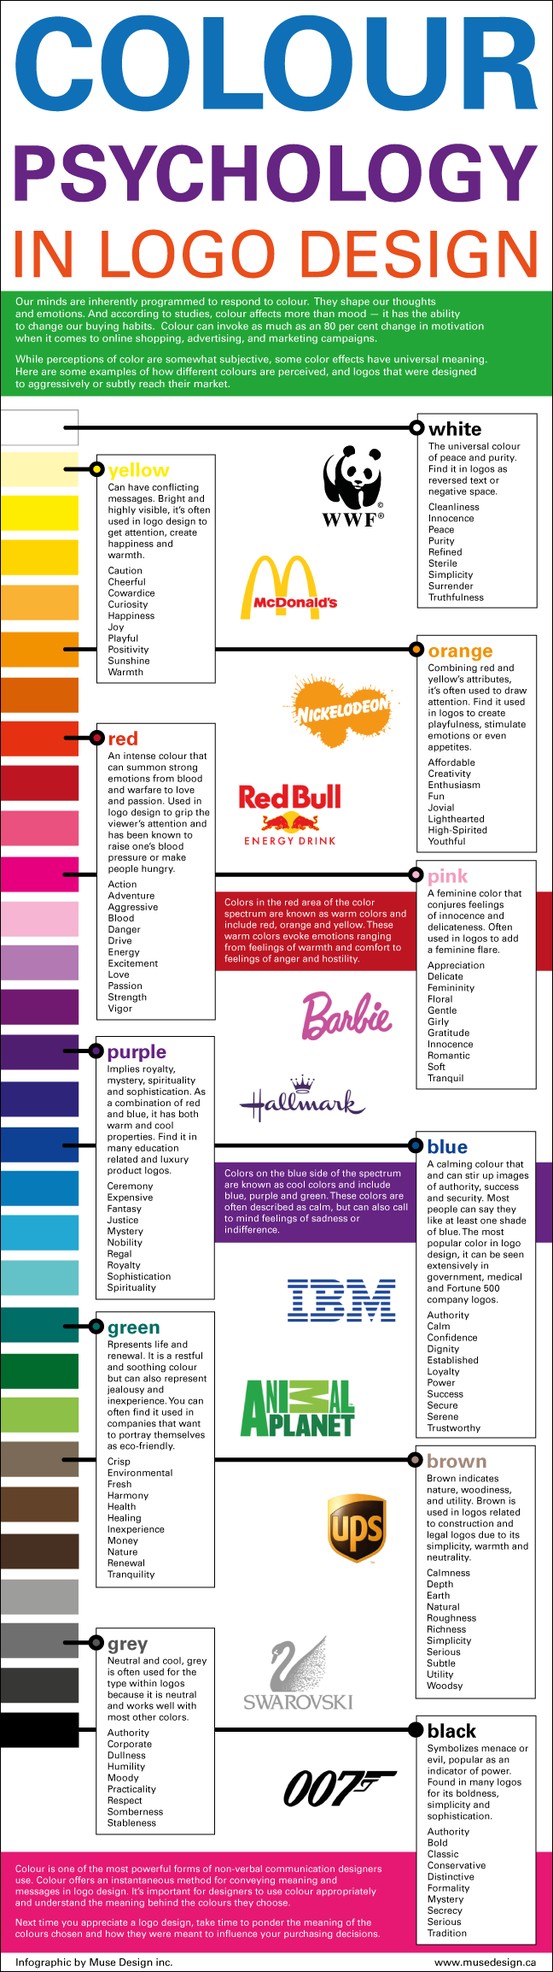 color-psychology-in-logo-design_5030f8bf7a1e7.jpg